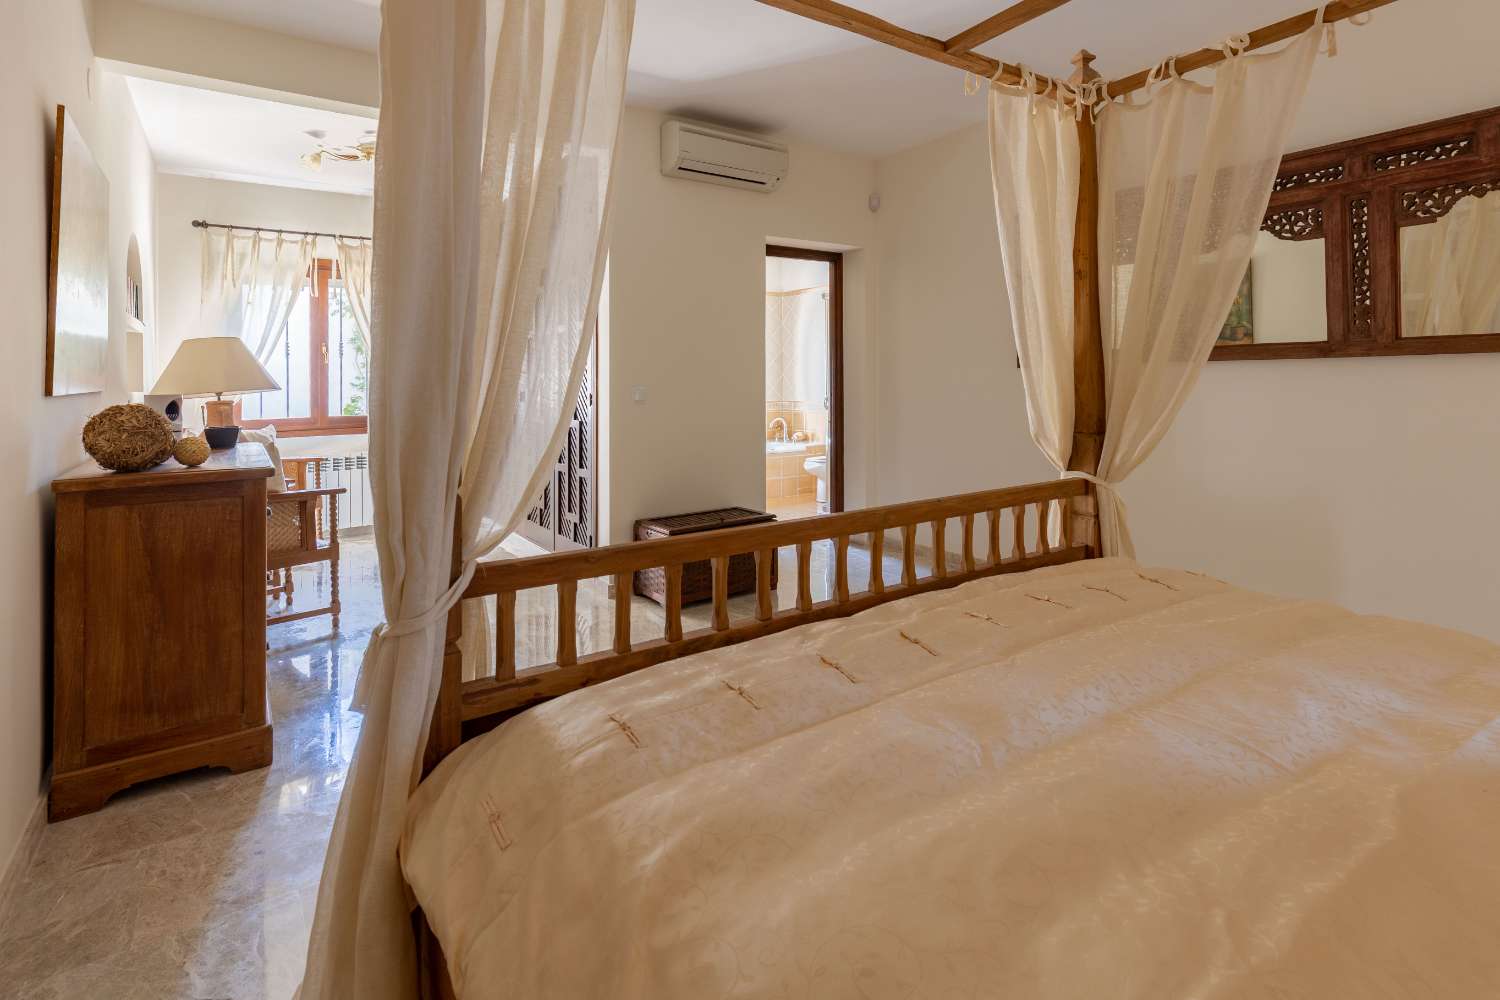 Villa 4 dormitorios, 8000 m2 de parcela y con vistas al mar en Benissa Costa / Calpe (Costa Blanca)